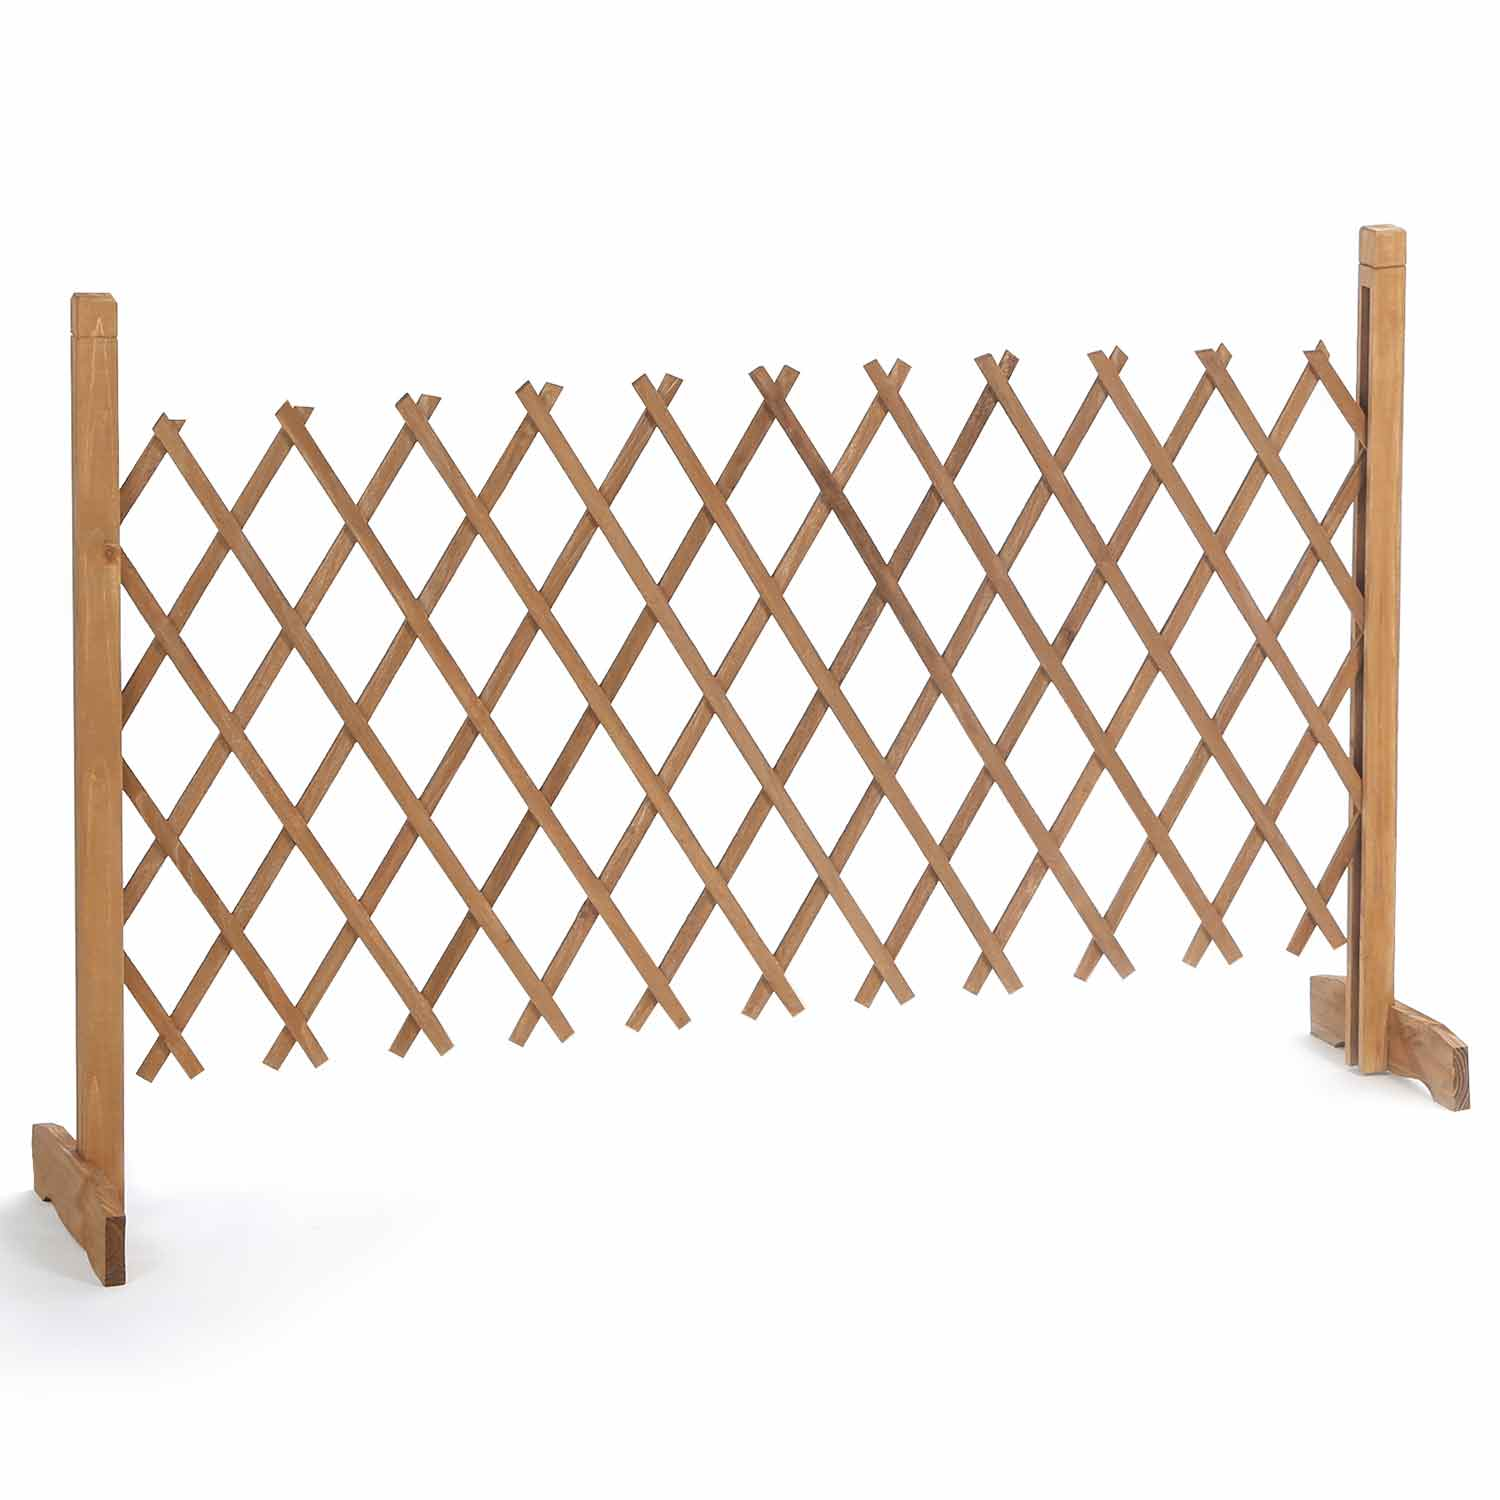 Barrière extensible rétractable barrière de sécurité dim. 225l x 30l x 106h  cm bois sapin traité carbonisation - Conforama